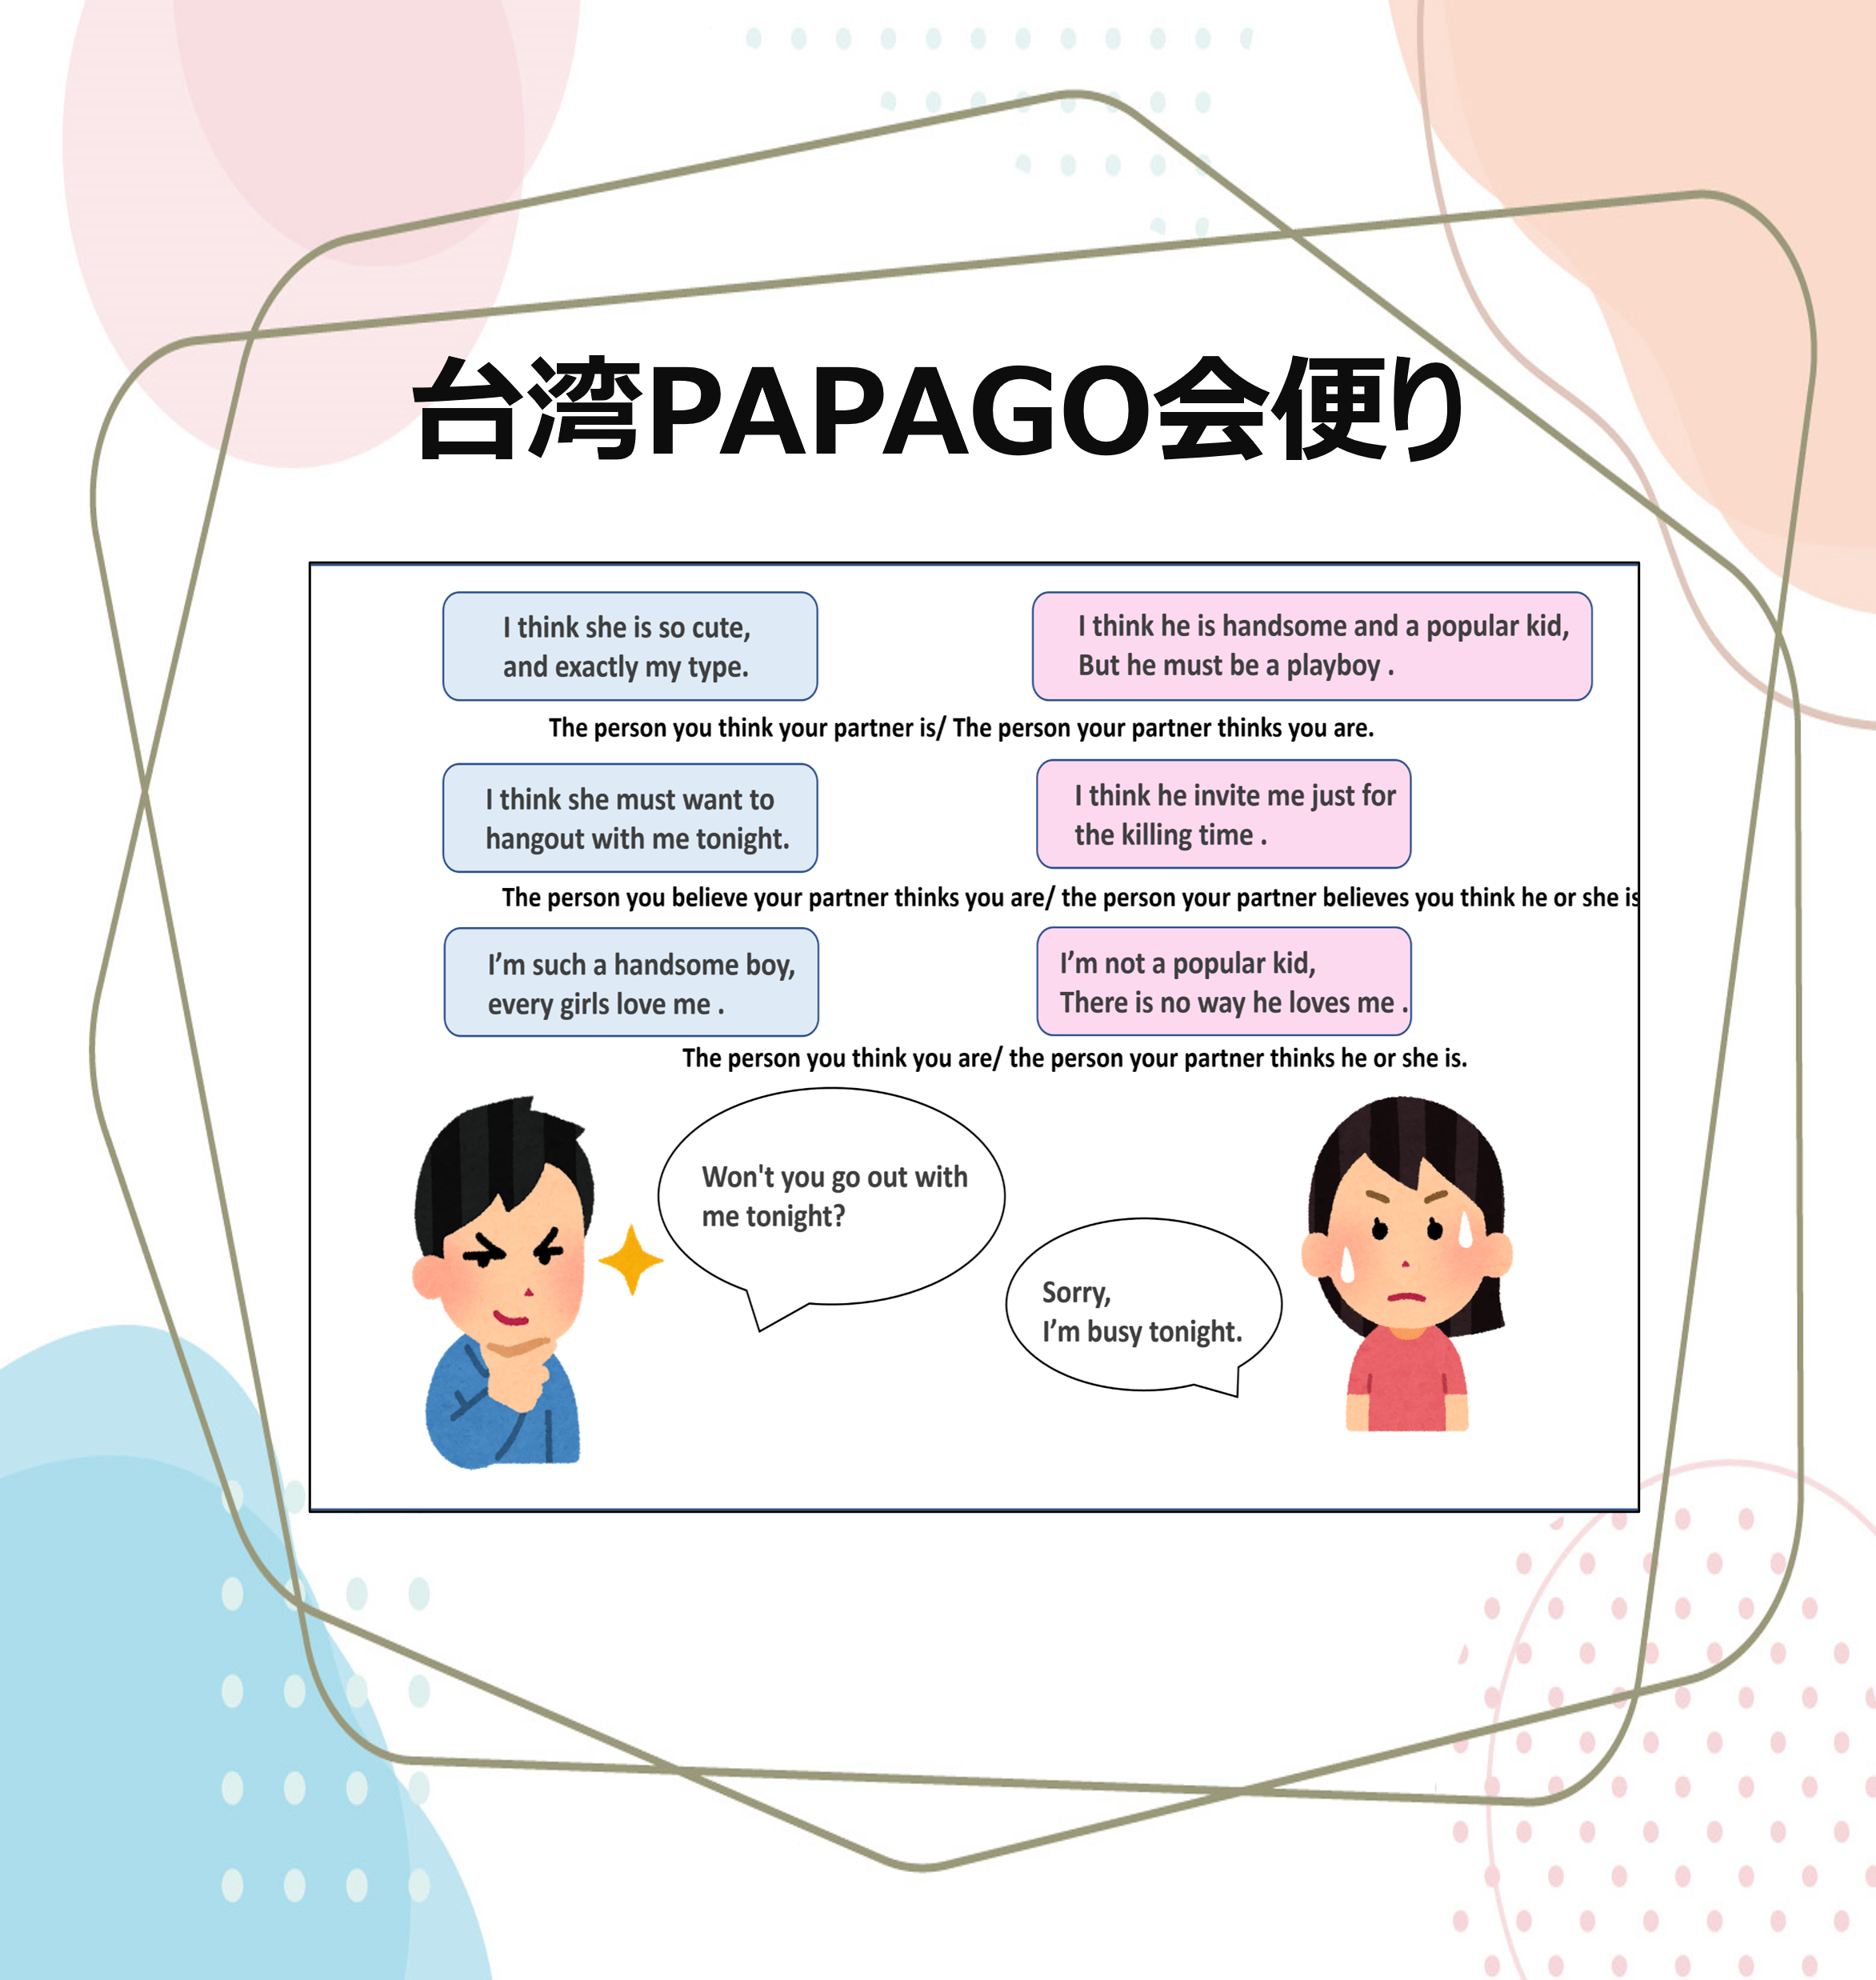 台湾PAPAGO会便り - 台湾留学、大学進学、台湾語学留学、短期留学｜PAPAGO遊学村